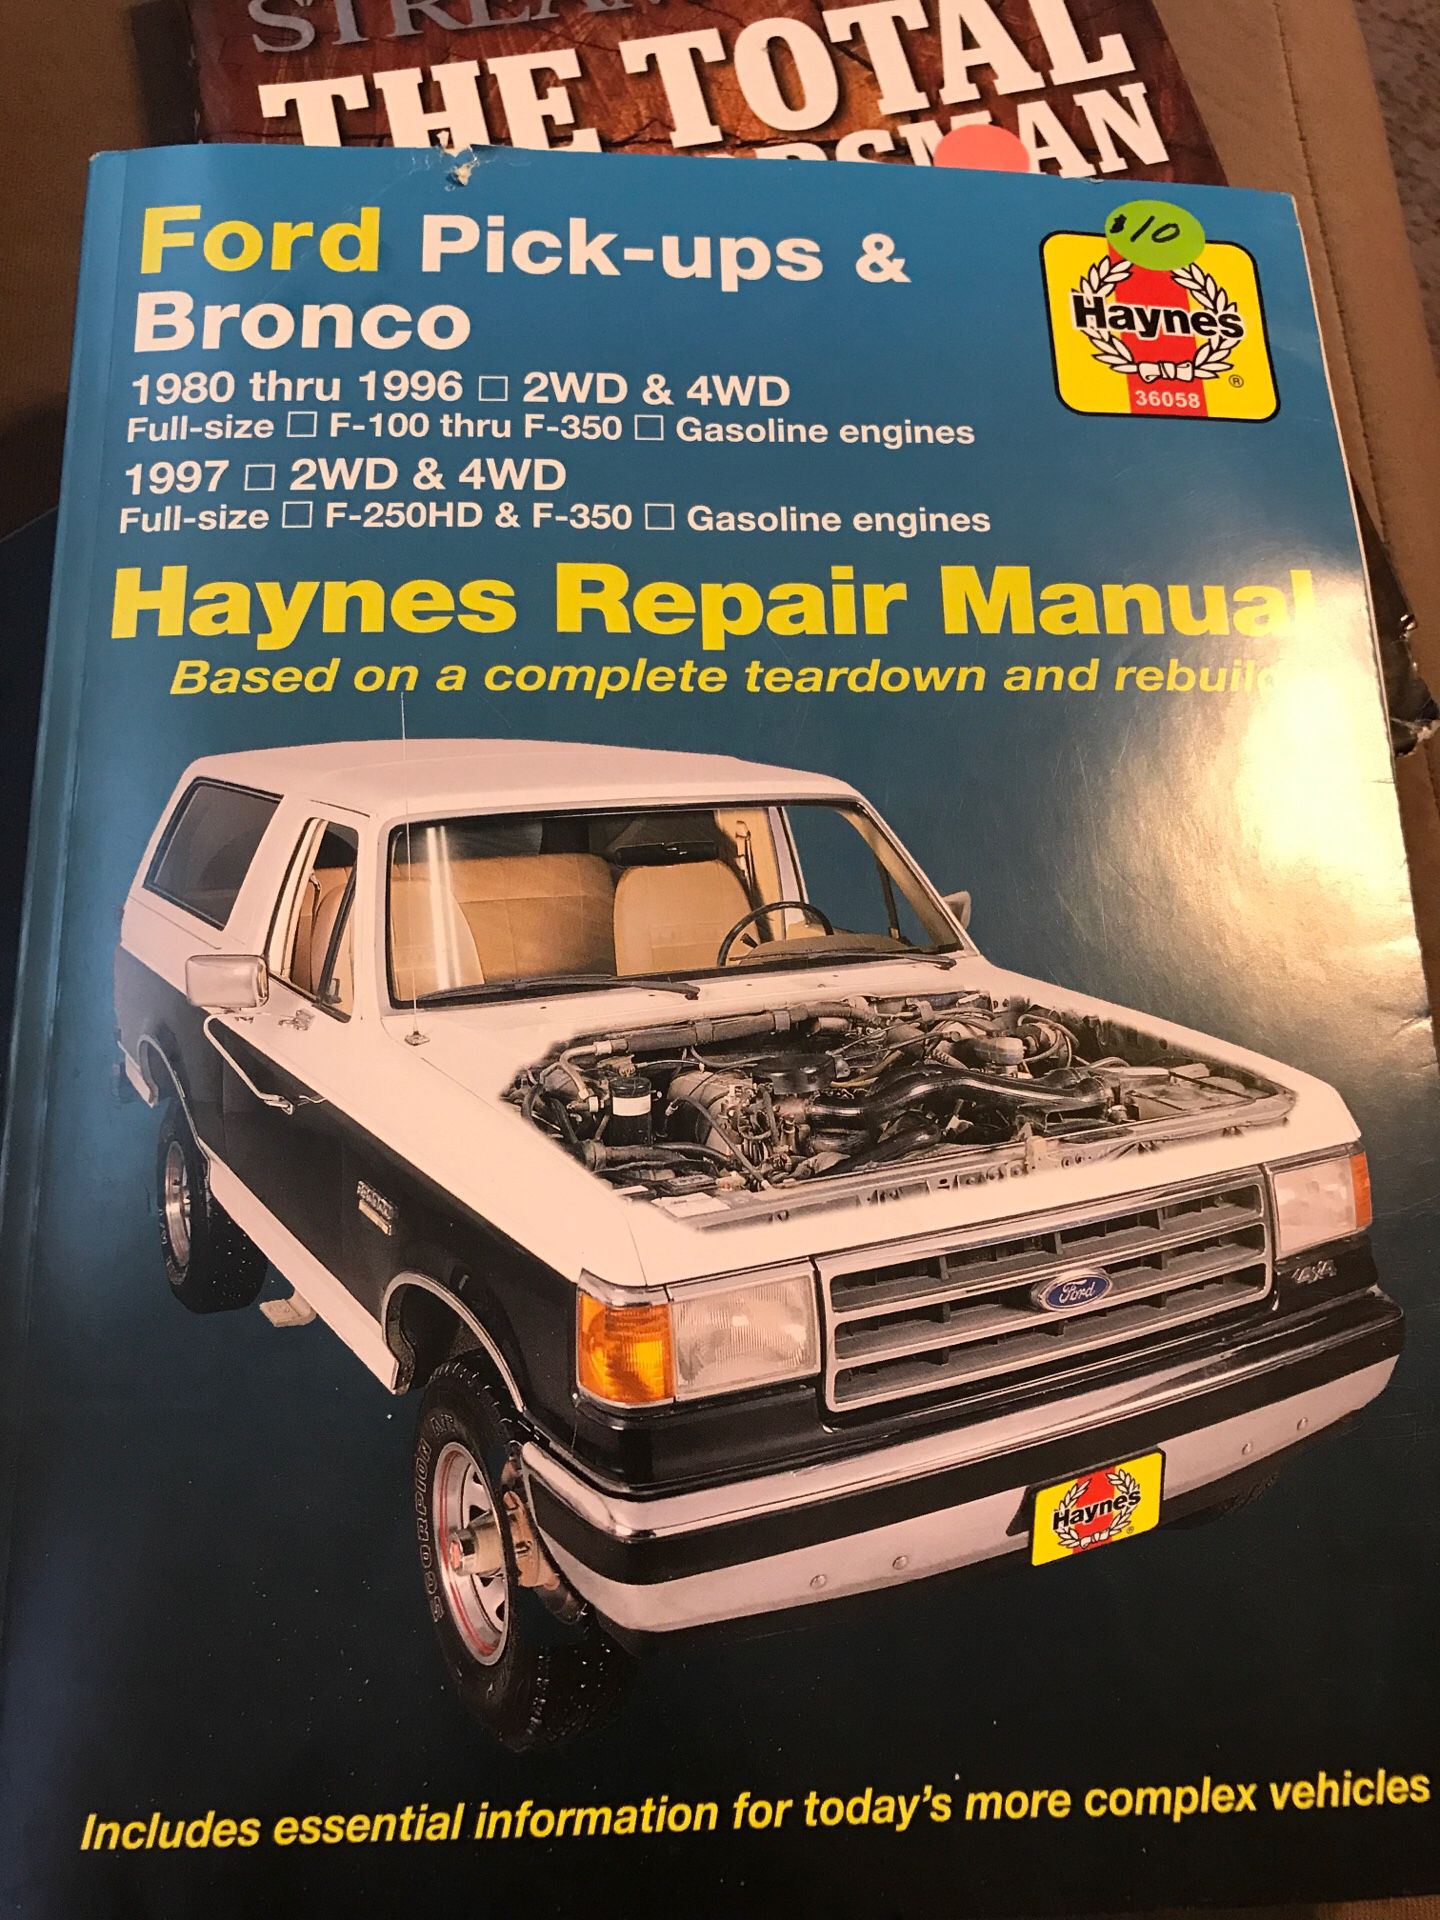 Haynes Repair Manual Ford Pick-ups 1980 - 1996